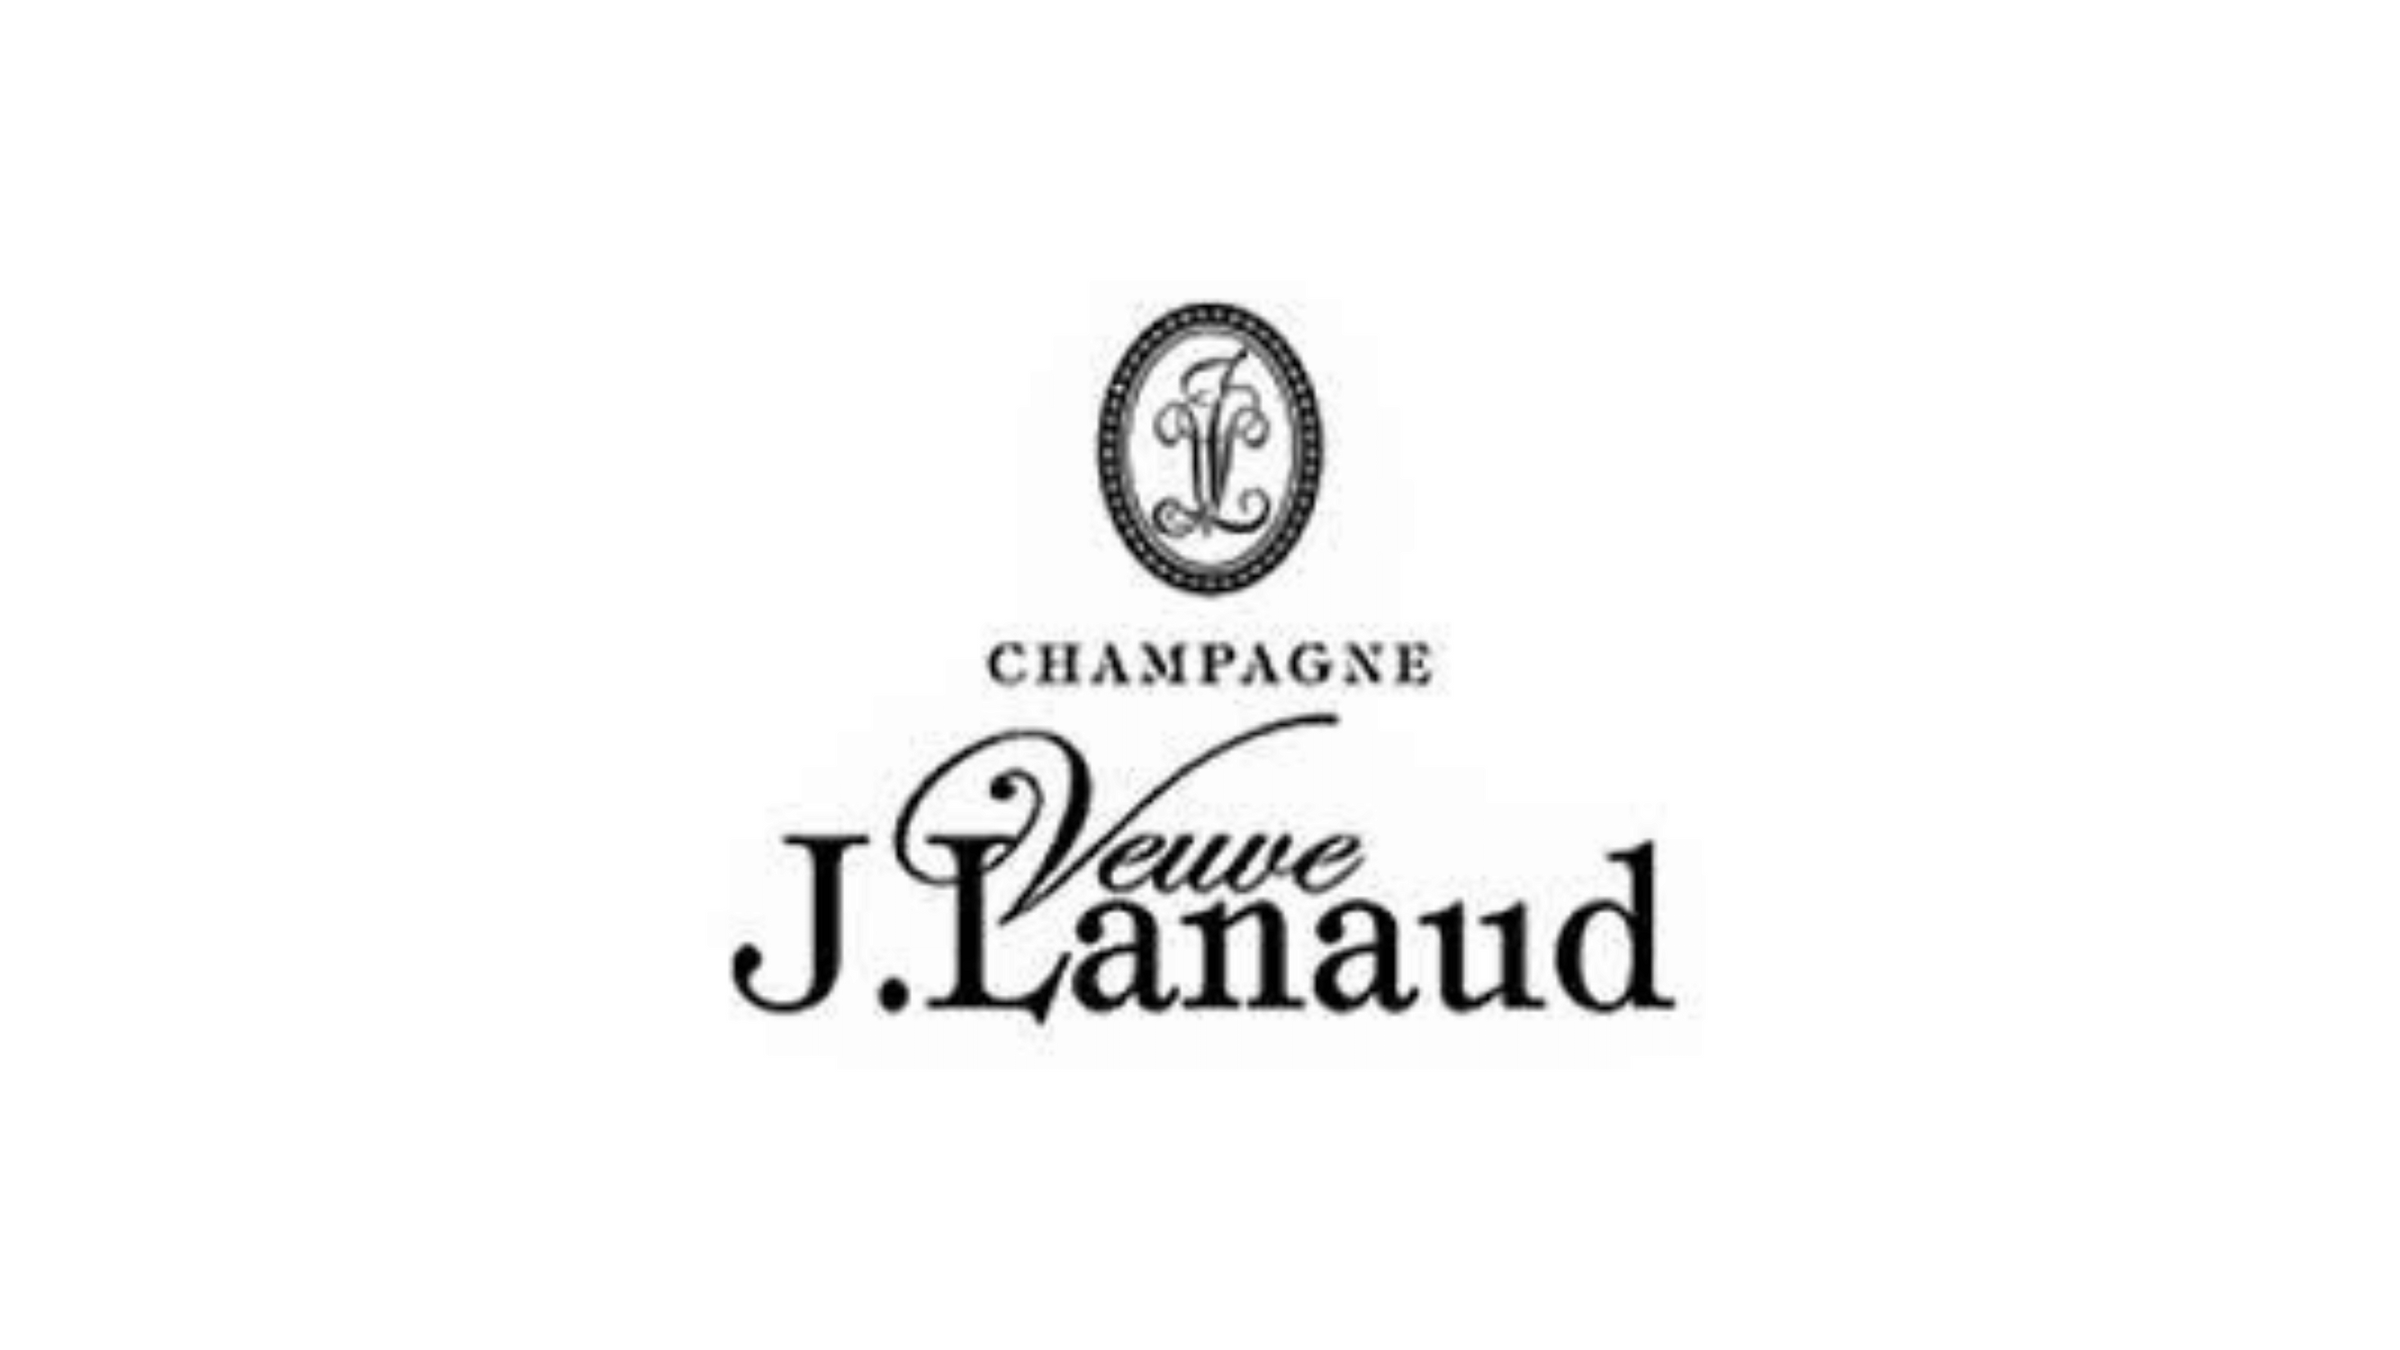 – Veuve J. Champagnifique Lanaud